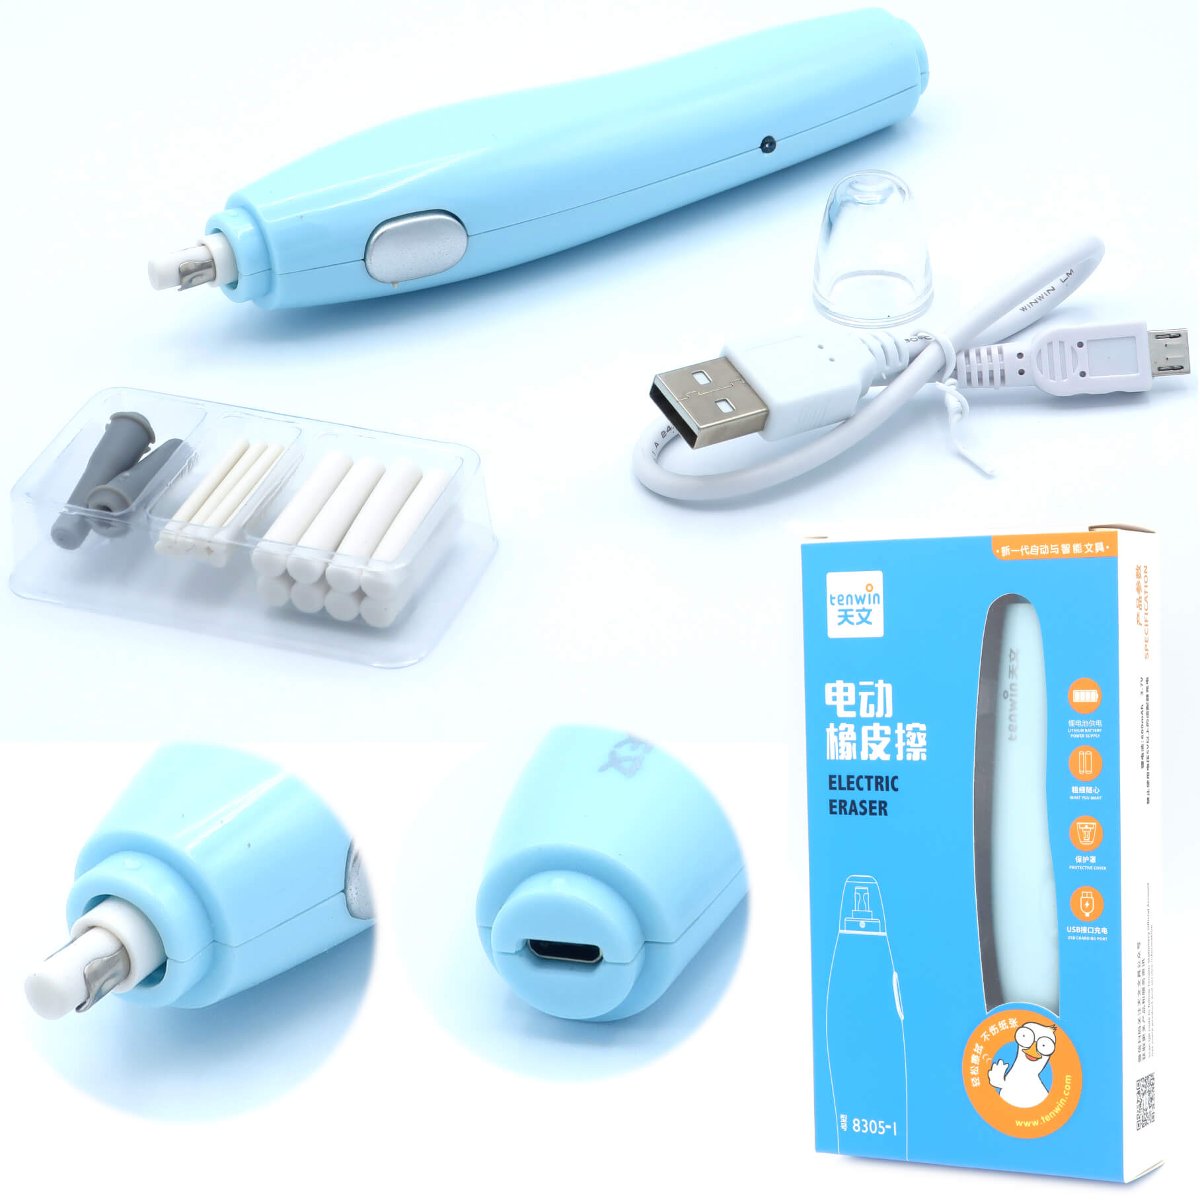 Zdjęcia - Temperówka Gumka elektryczna akumulator USB +16wkładów TENWIN